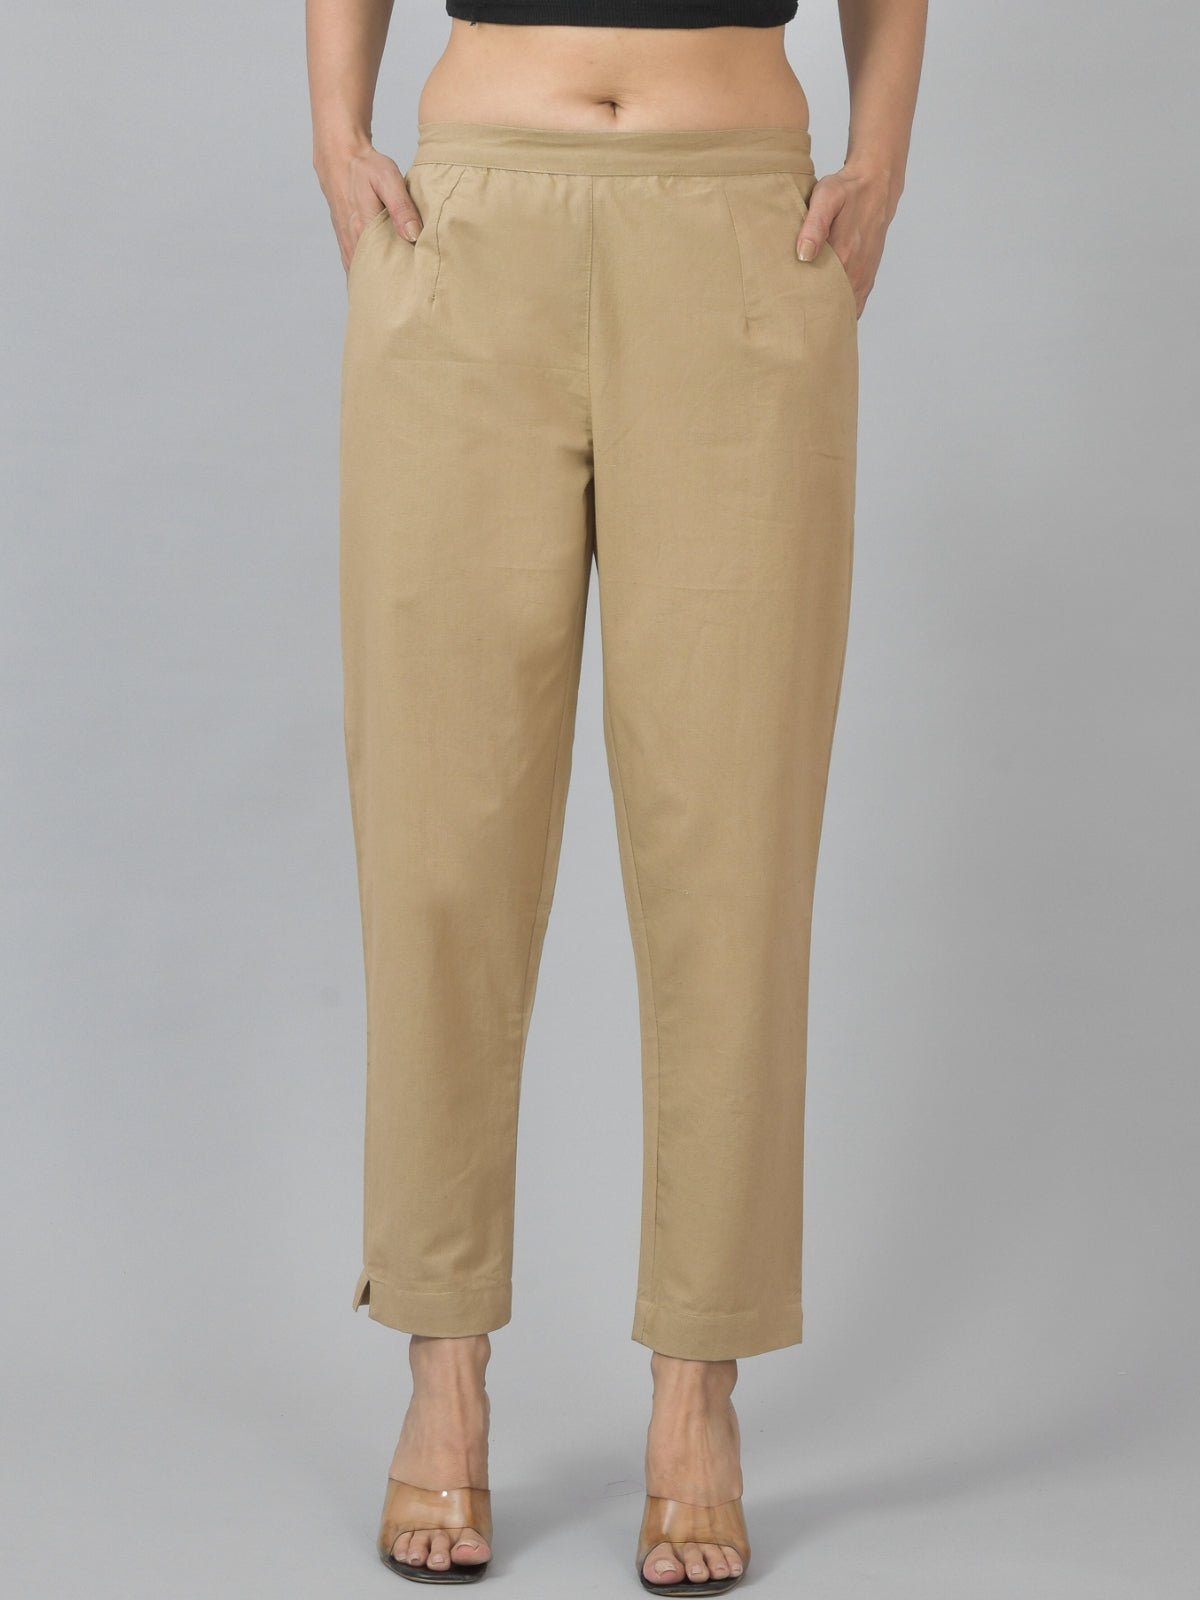 Women Regular Fit Deep Pocket Solid Beige Half Elastic Cotton Pants